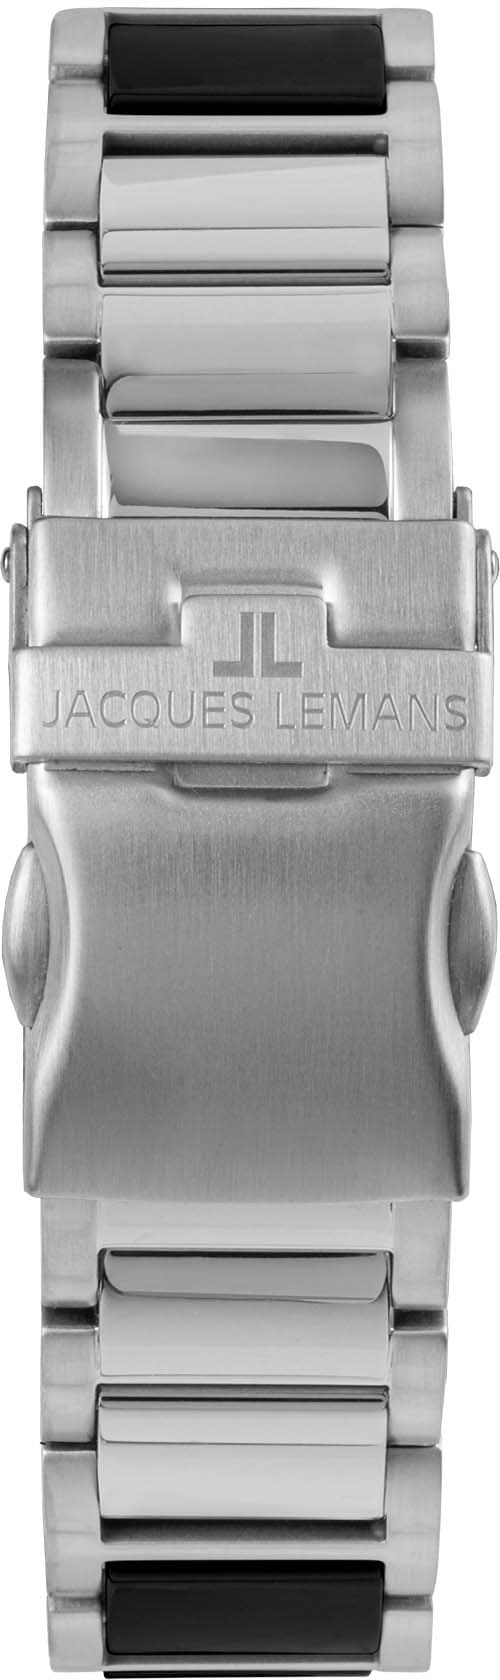 Jacques Lemans Keramikuhr »Liverpool, 42-10A« ♕ bei